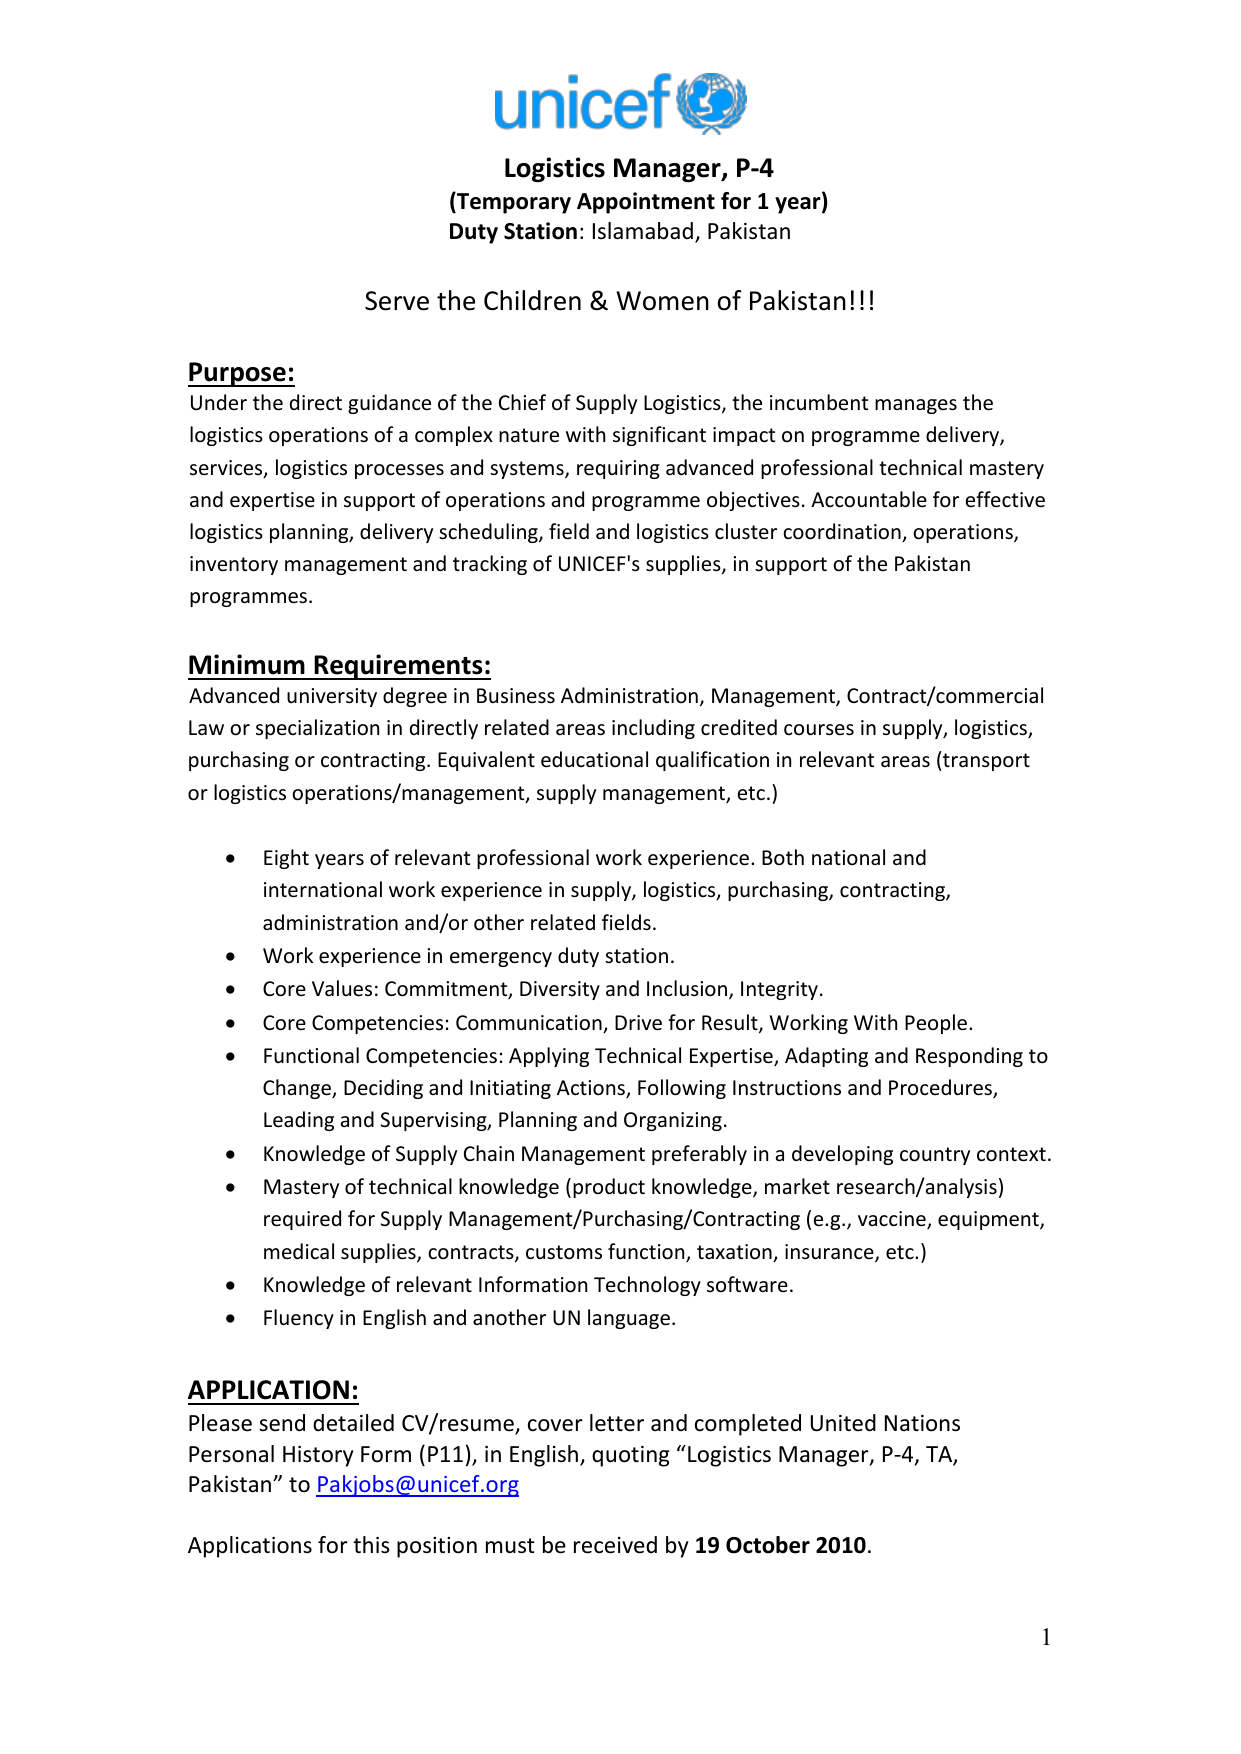 sample cover letter for unicef internship